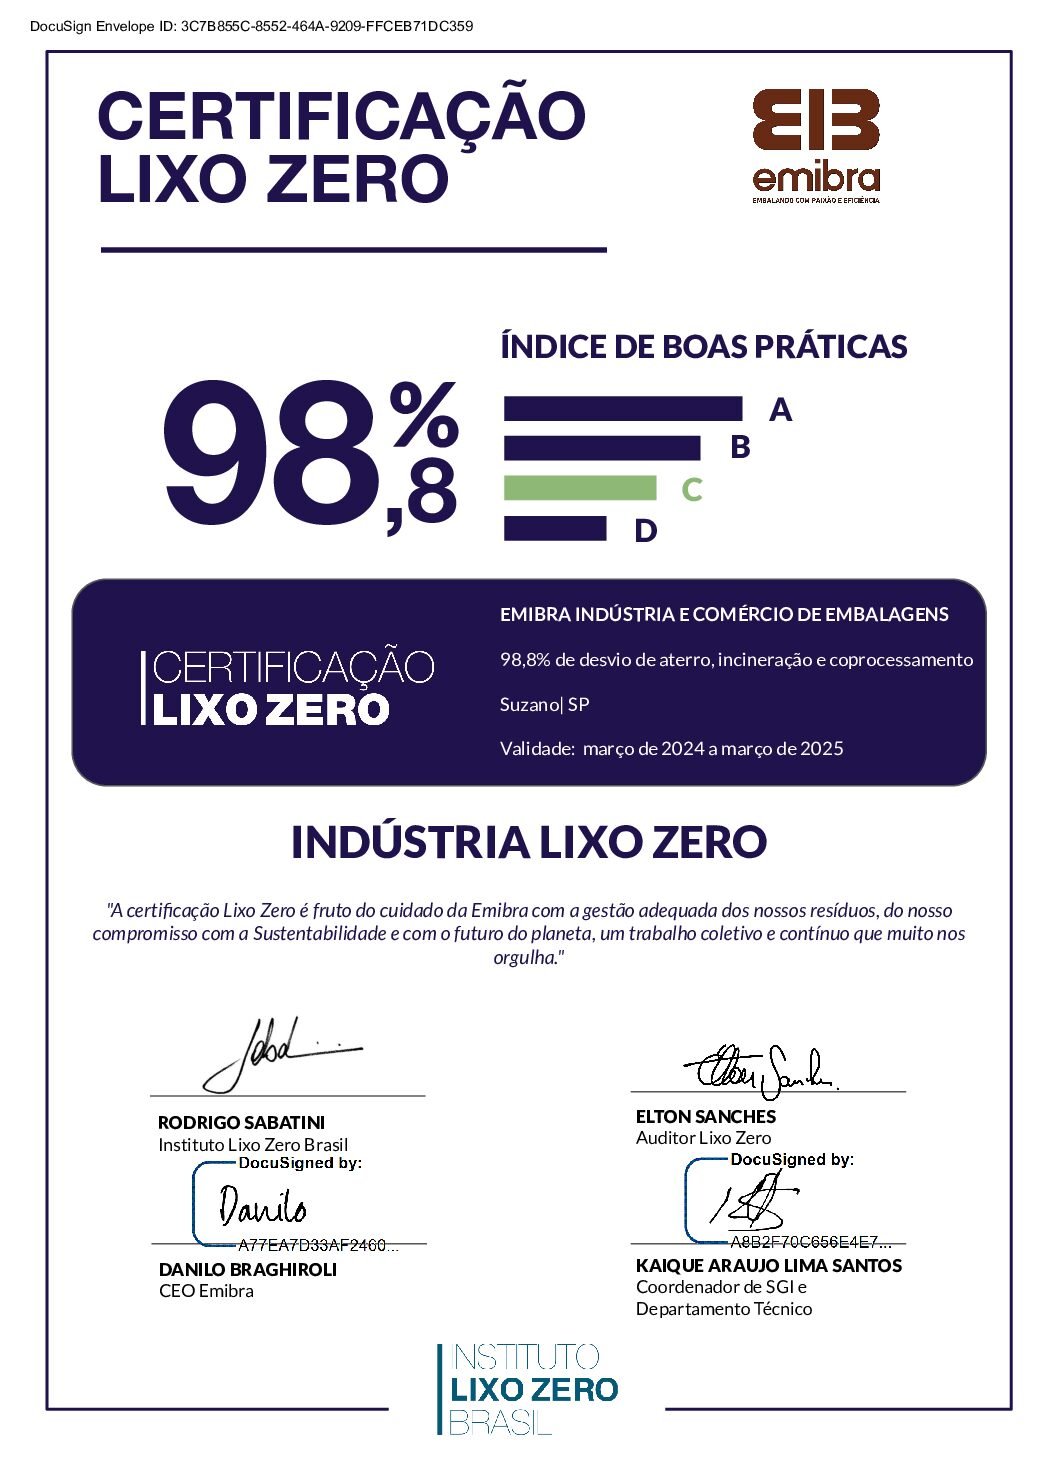 CertificaçãoLixoZero_Emibra_Indústria_e_Comércio_de_Embalagens_SP_Março_2024